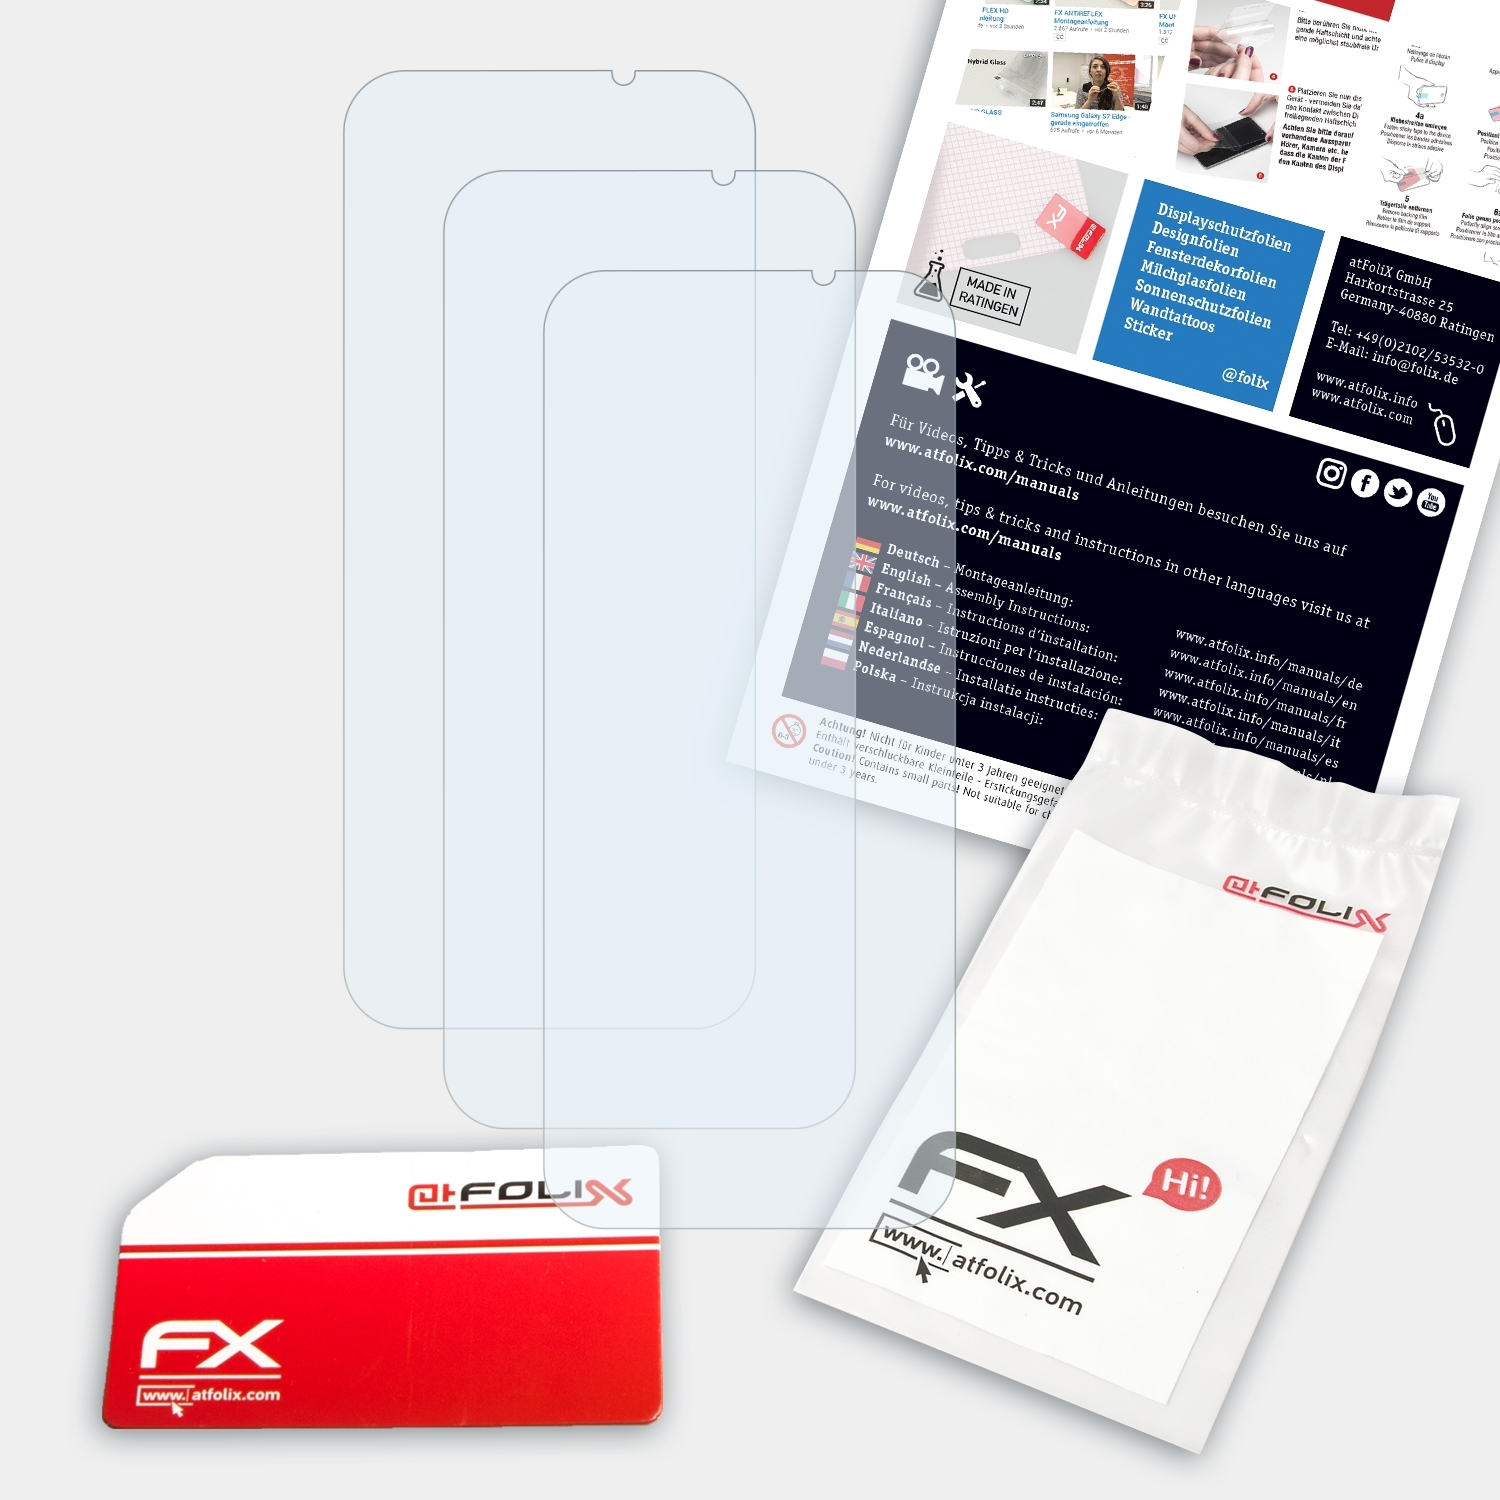 Displayschutz(für Xiaomi Shark 2) Black 3x FX-Clear ATFOLIX